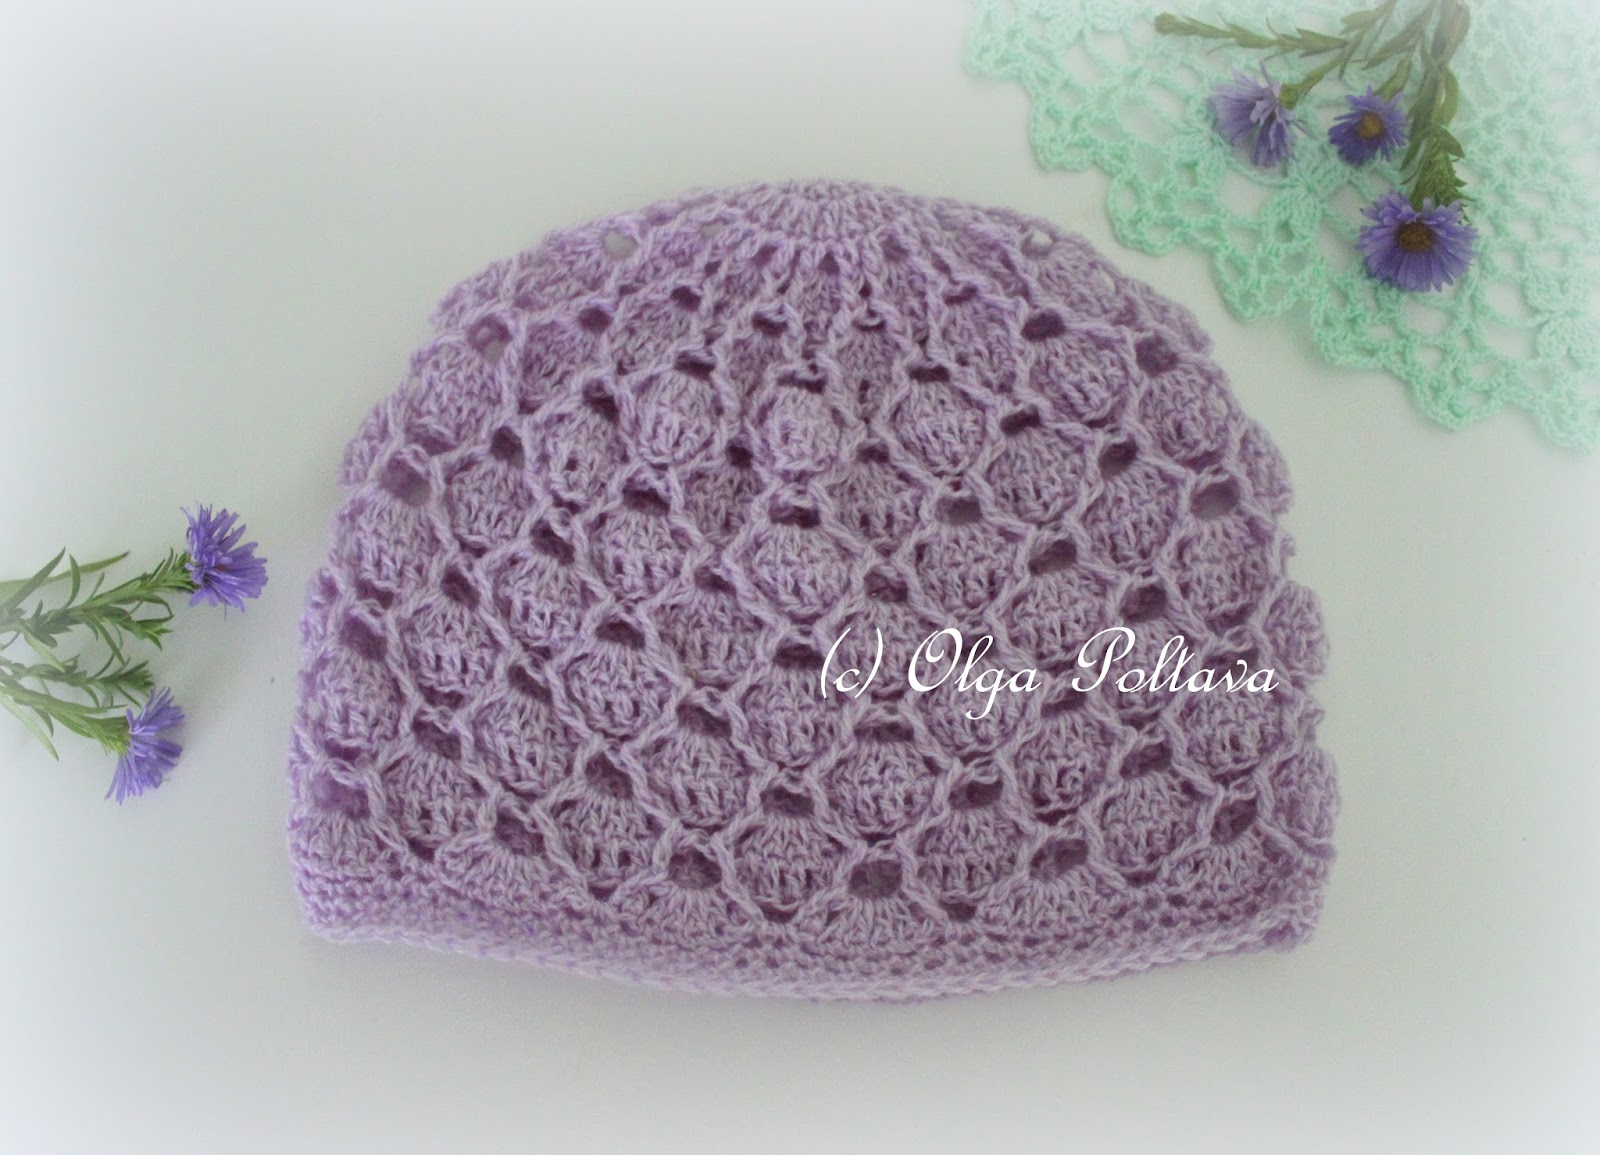 Crochet Baby Hat Pattern Lacy Crochet Delicate Lace Crochet Ba Hat Free Pattern From